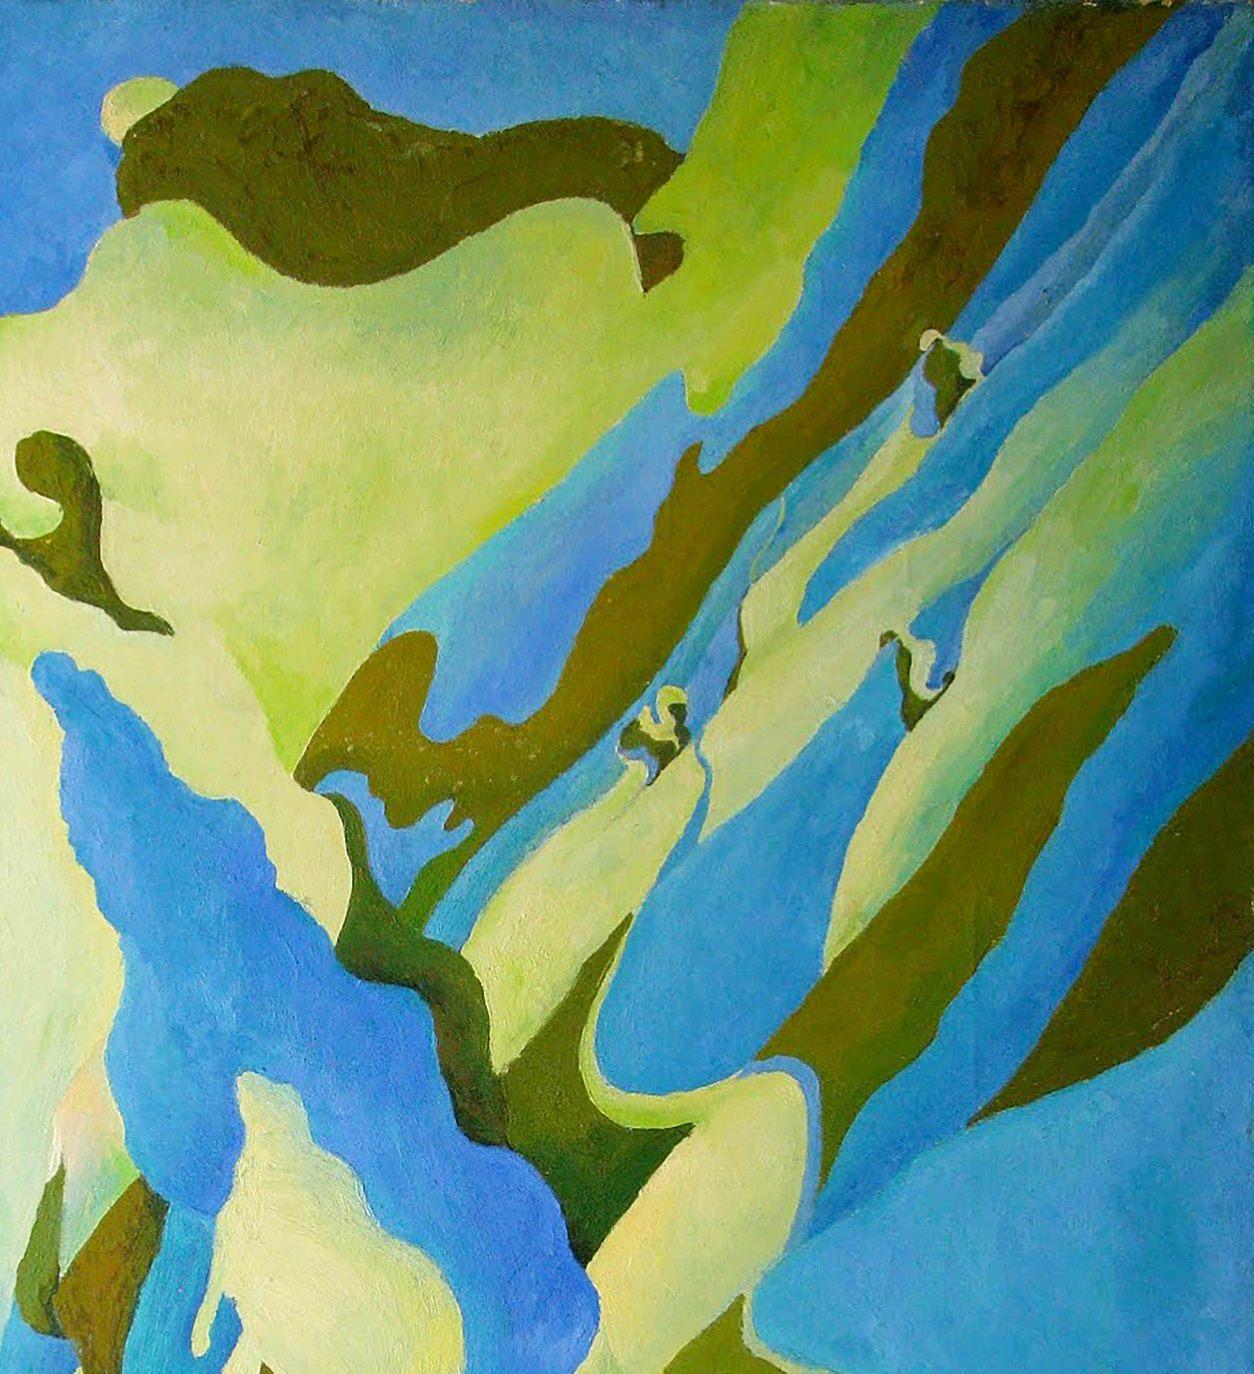 Artiste : Varvarov Anatoly Viktorovich
Titre : Peuplier,
Taille : 48.5x39.5 inches, (123x100 cm)
Médium : Huile sur toile
Peint à la main, original, unique en son genre.

Cette peinture à l'huile intitulée 